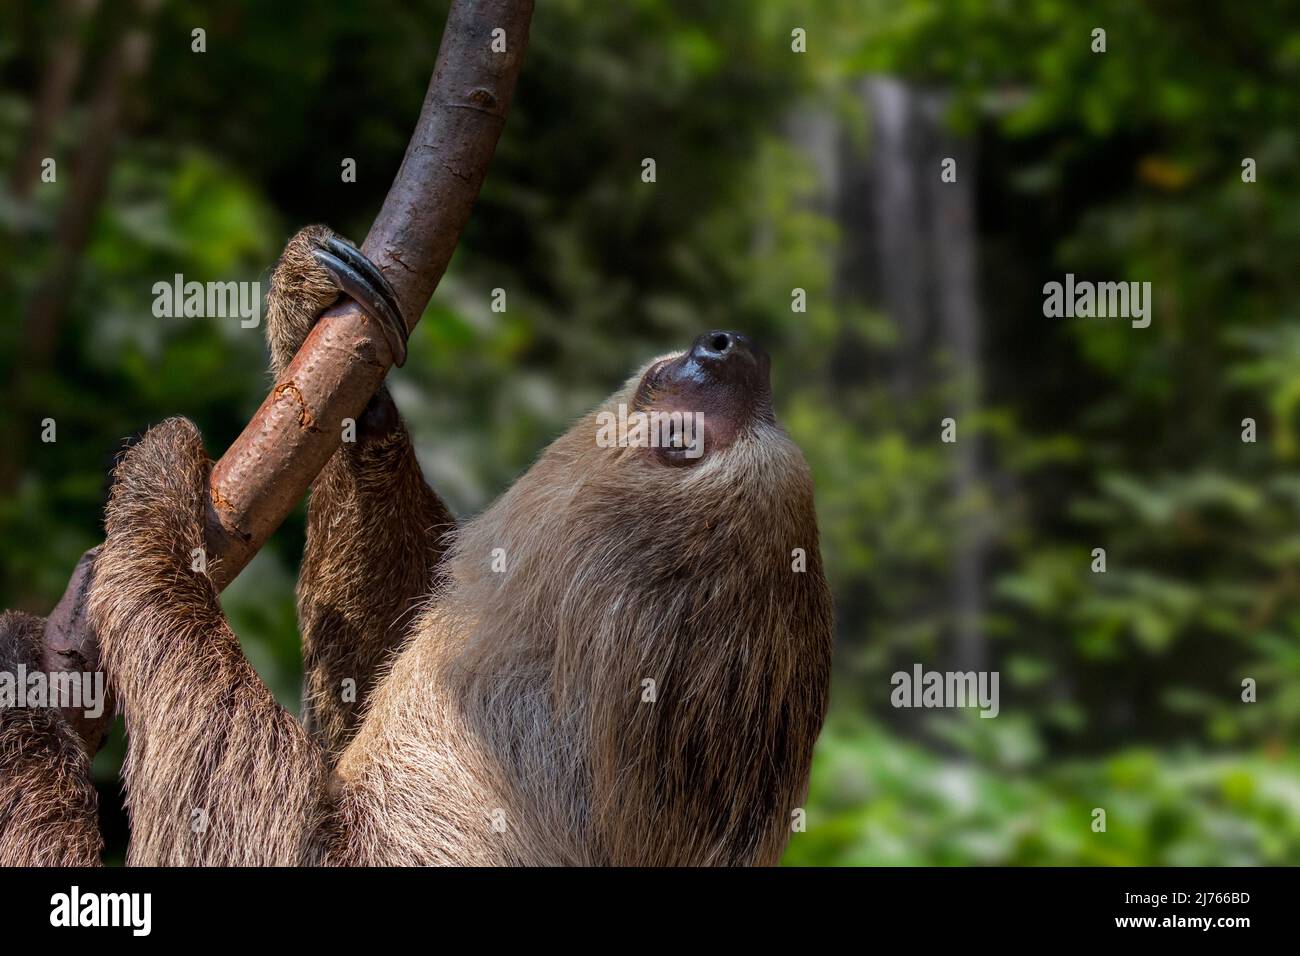 Sloth à deux doigts de Linnaeus / Sloth à deux doigts de sud / Sloth à deux doigts de Linne (Choloepus didactylus / Bradypus didactylus) arbre d'escalade, Amérique du Sud Banque D'Images